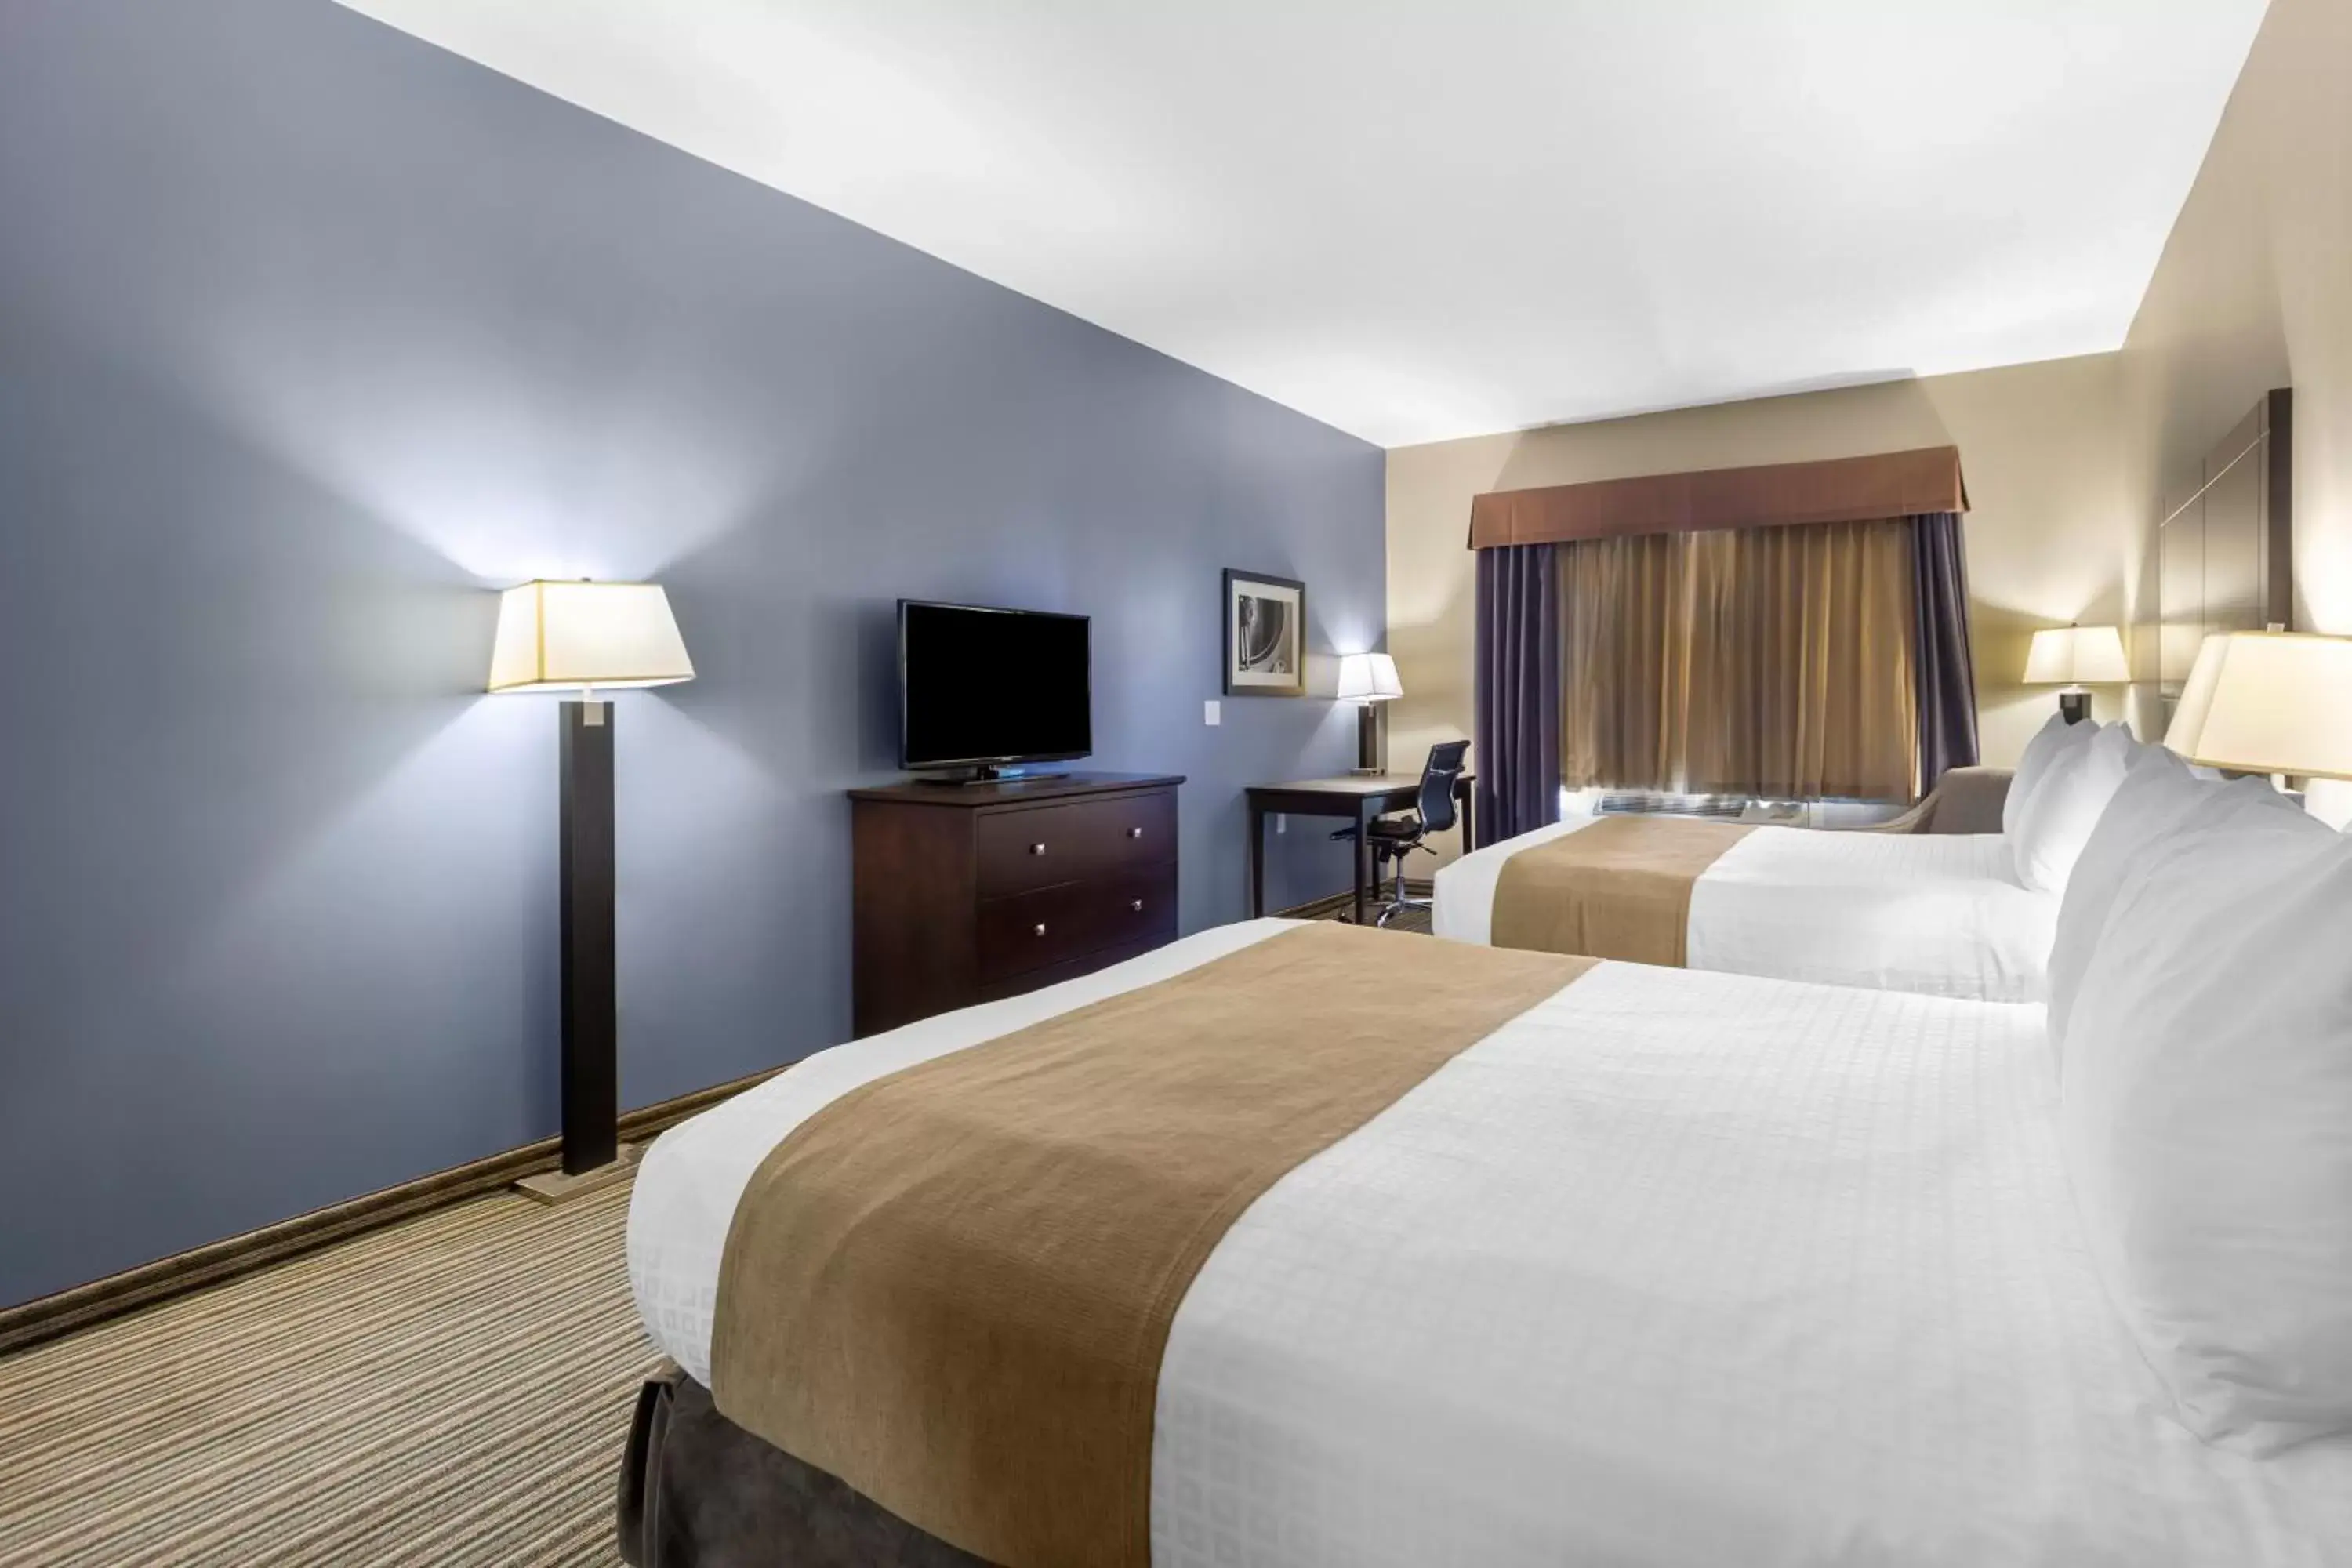 Property building, Bed in Best Western PLUS Fort Saskatchewan Inn & Suites